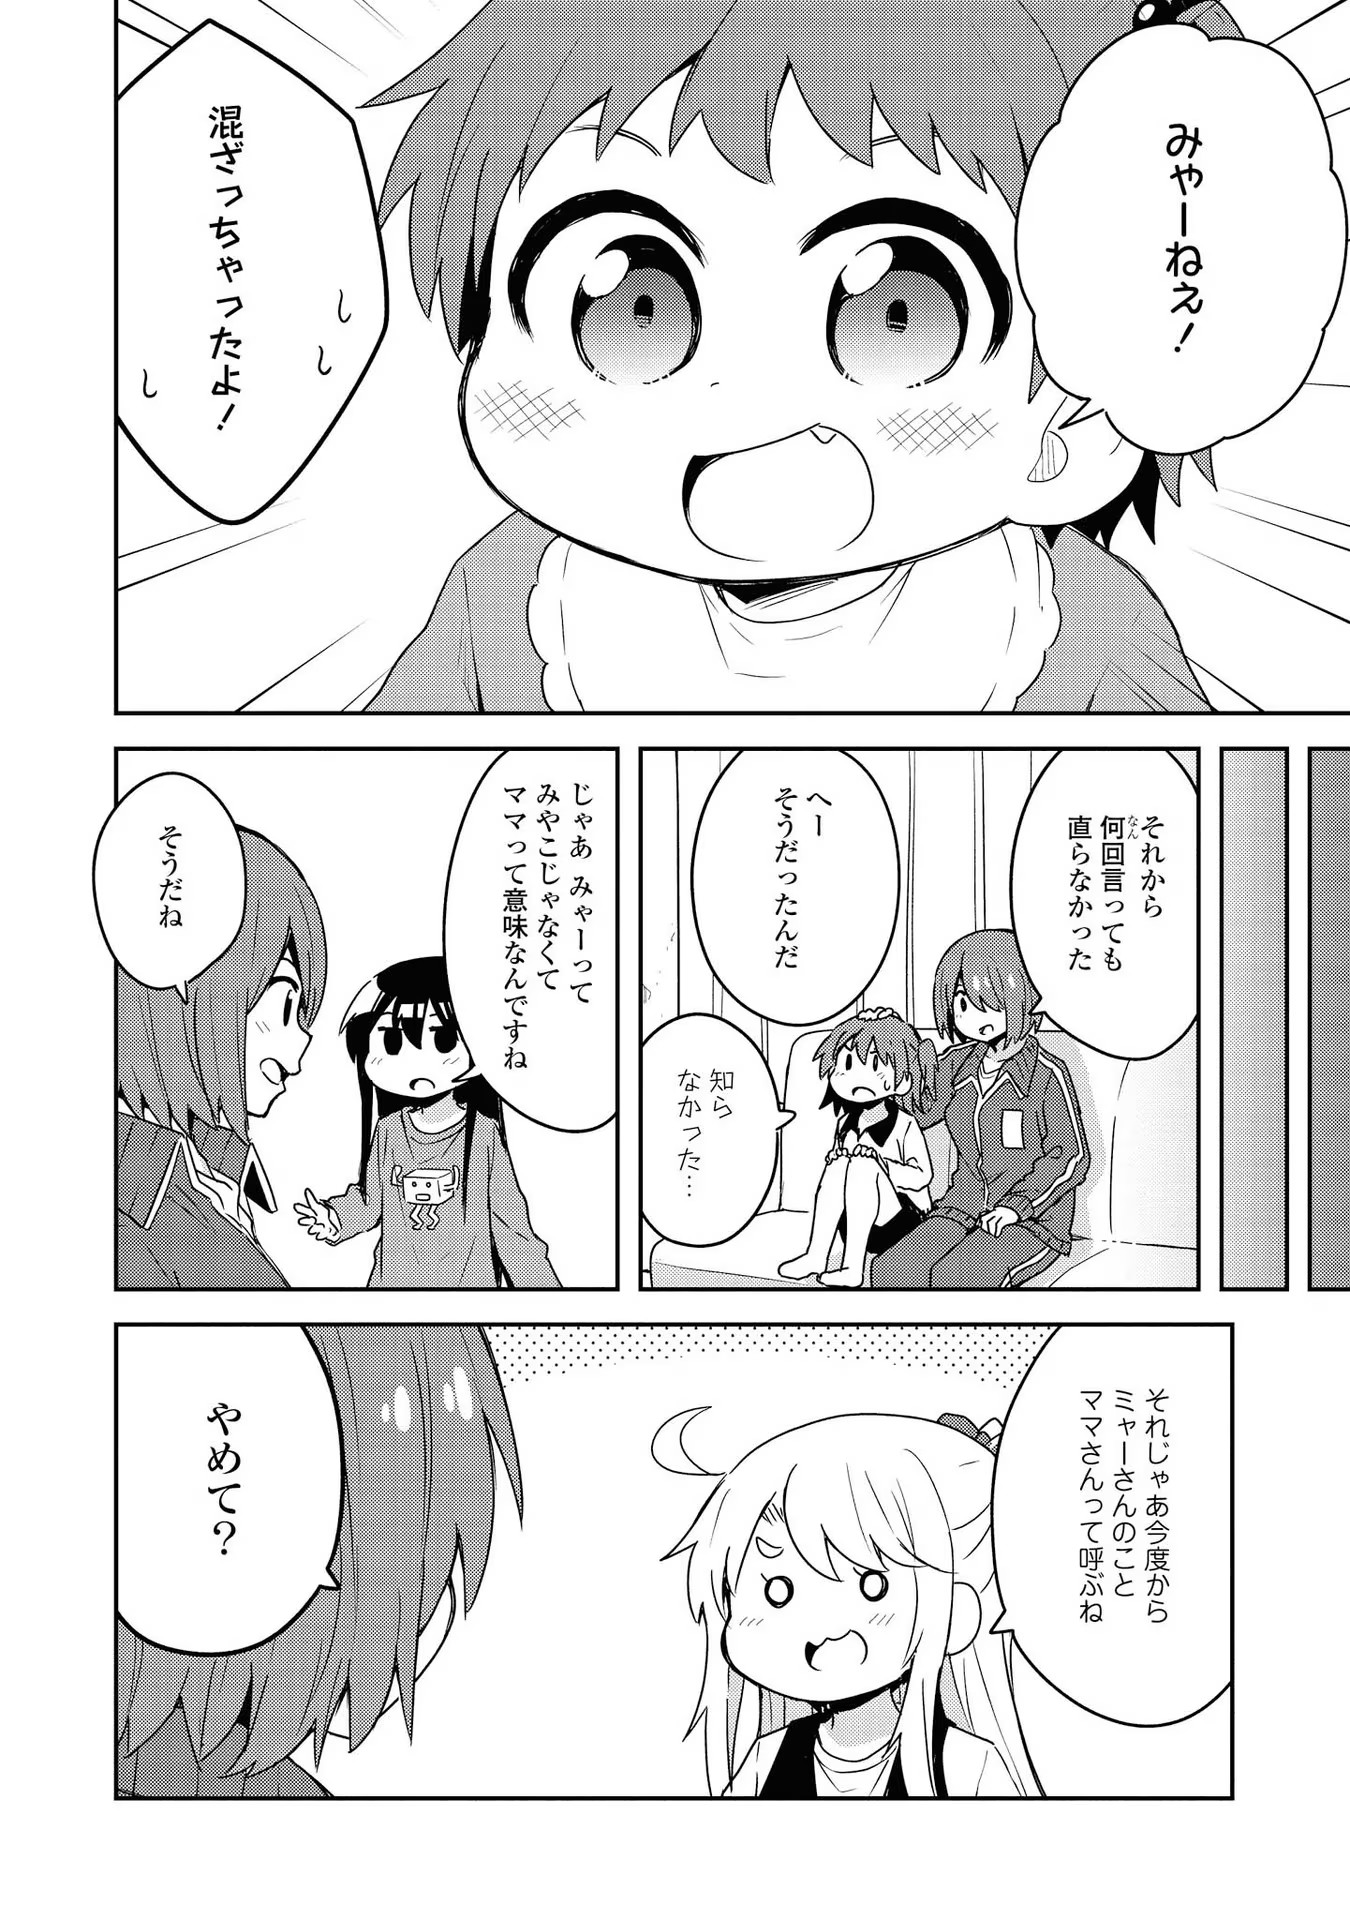 Watashi ni Tenshi ga Maiorita! - Chapter 60.5 - Page 3